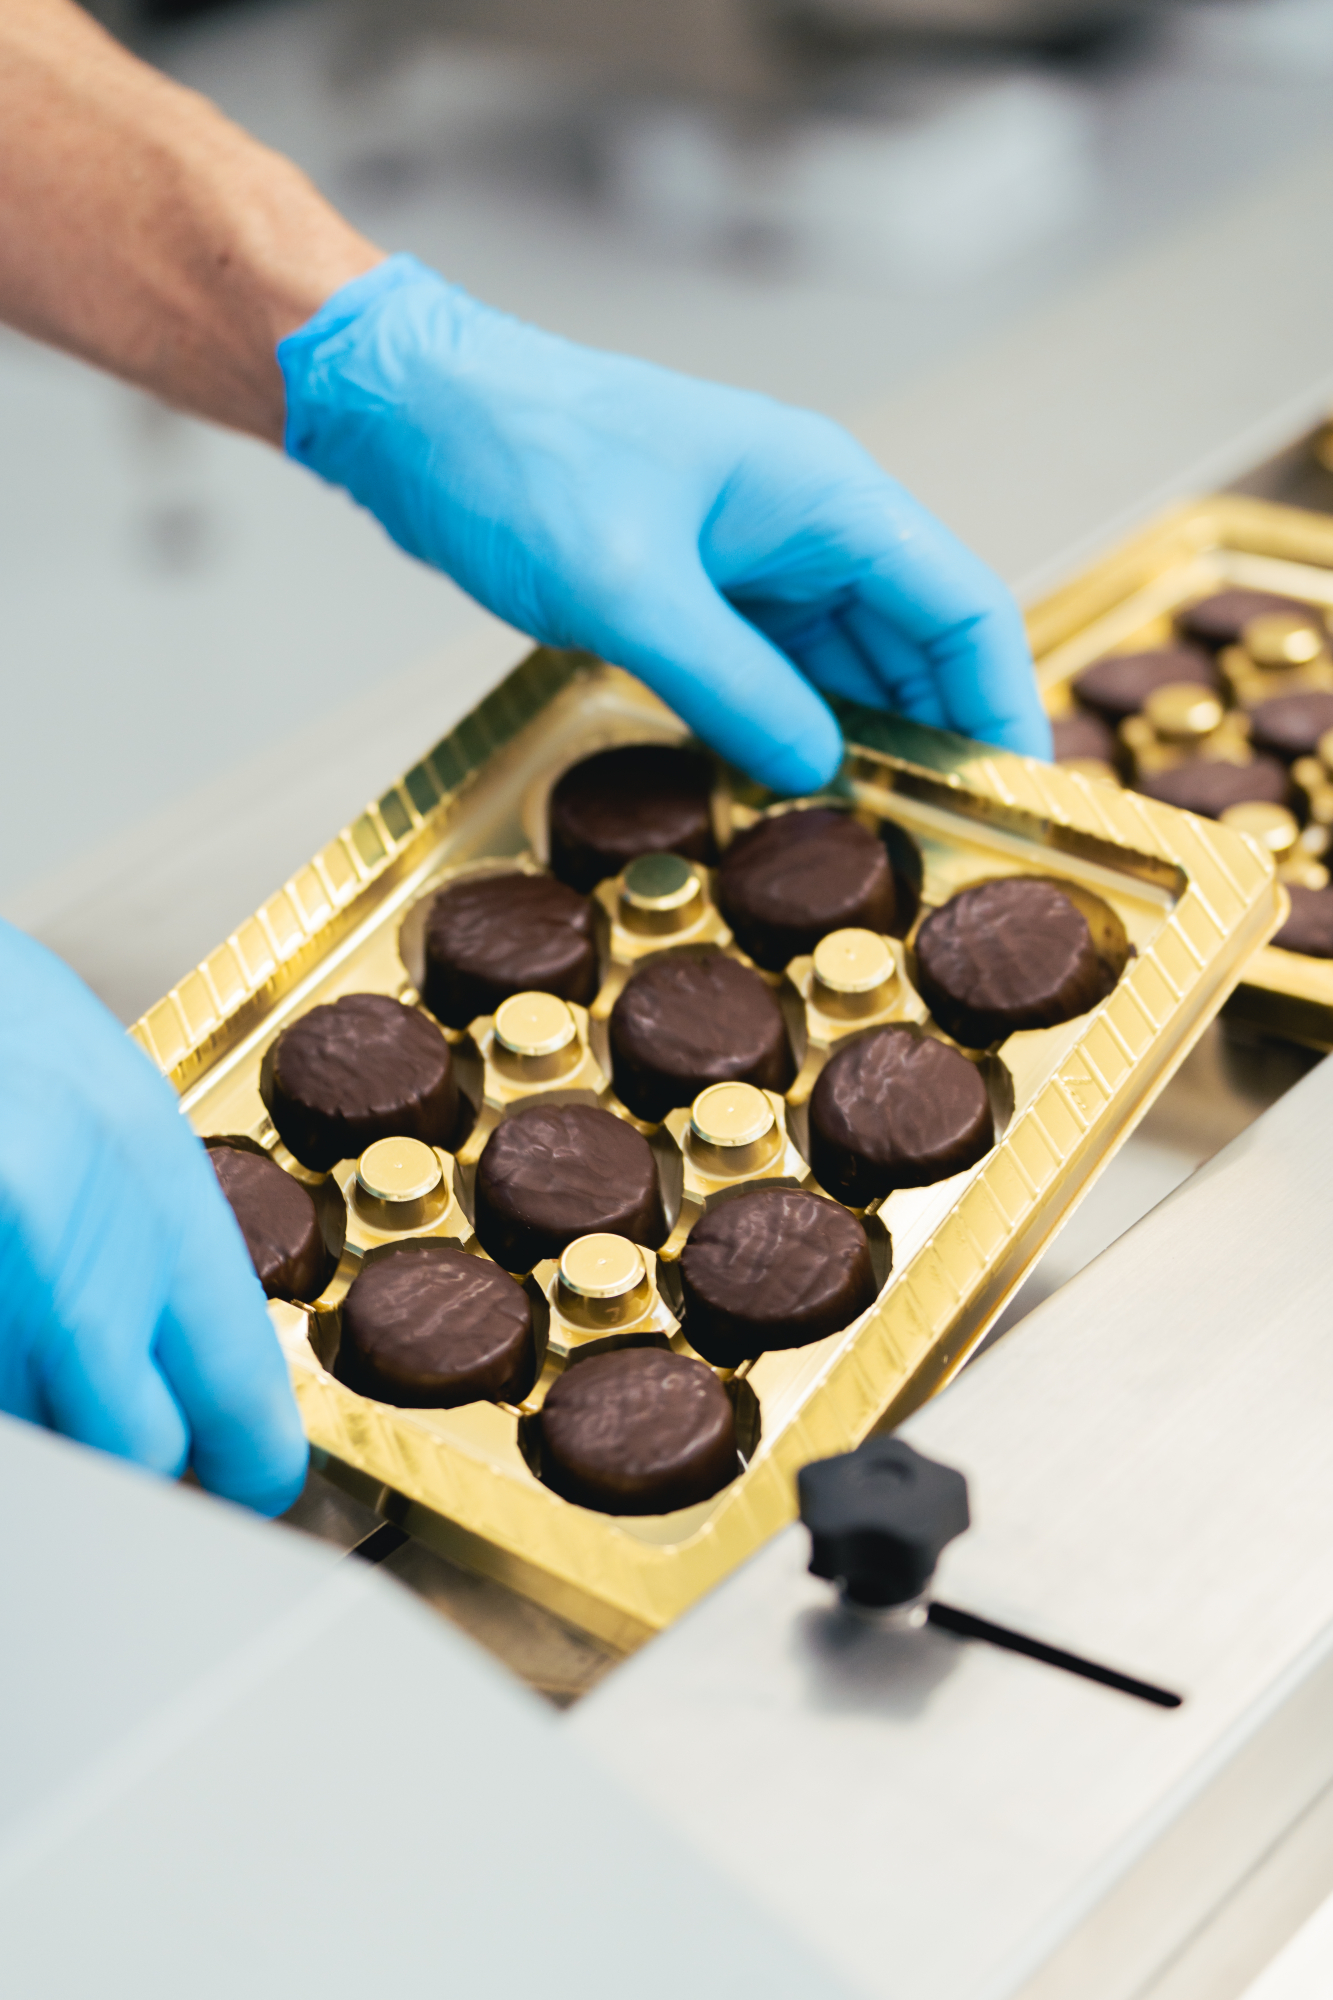 los toritos de chocolate son una de las novedades de esta pasteleria centenaria 5245